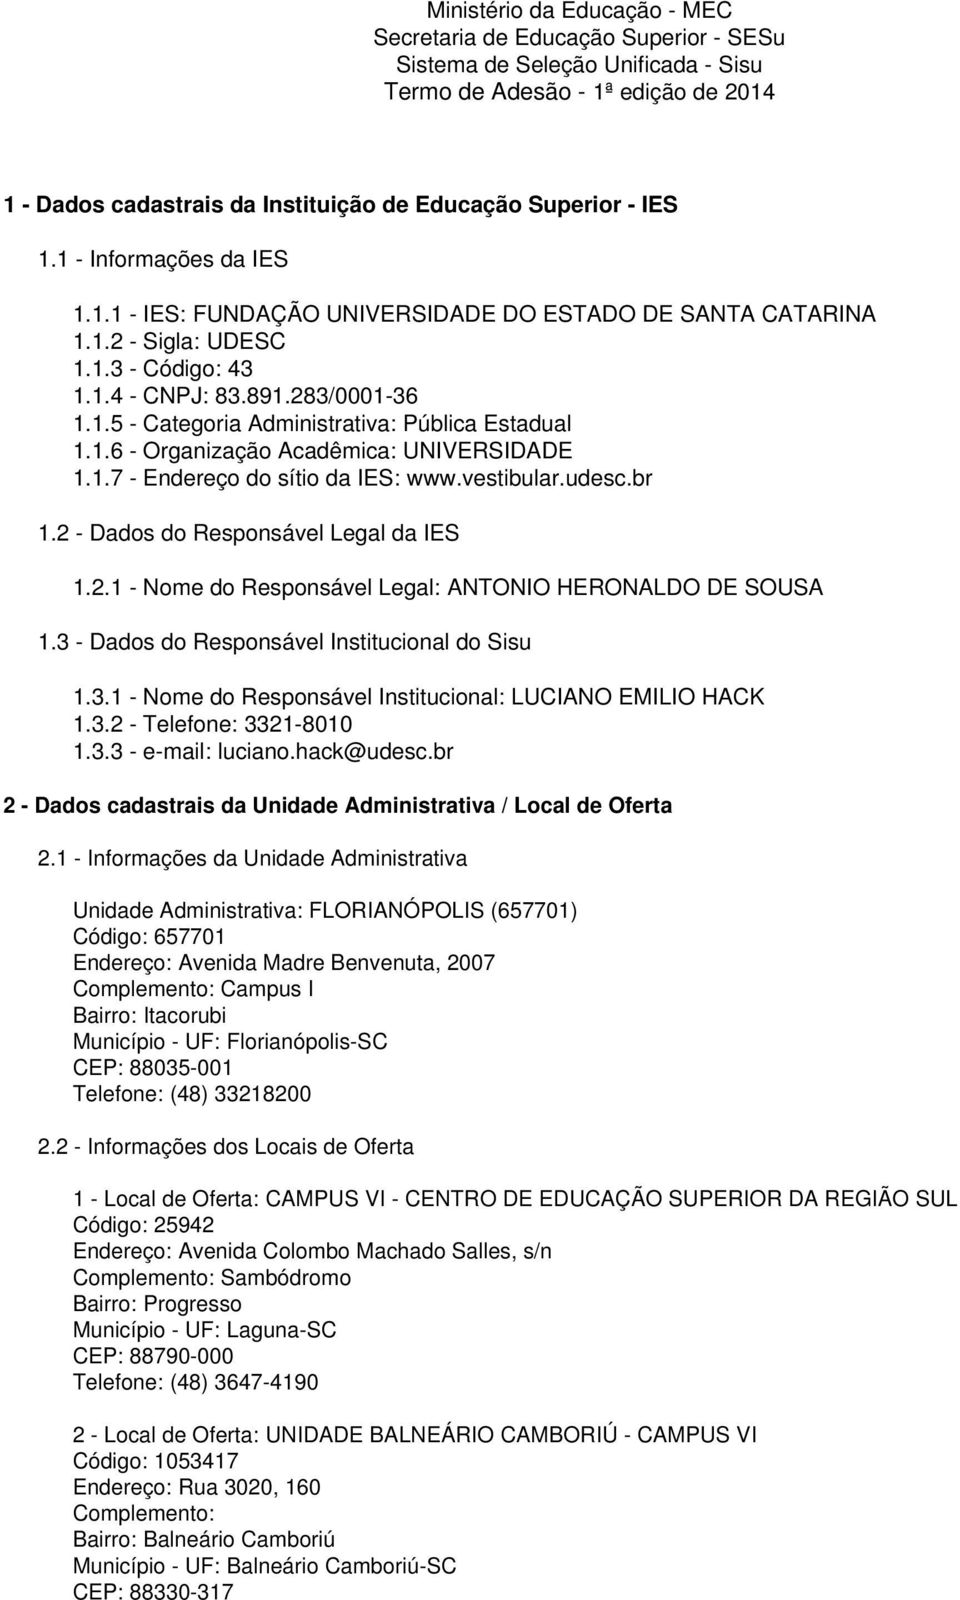 1.6 - Organização Acadêmica: UNIVERSIDADE 1.1.7 - Endereço do sítio da IES: www.vestibular.udesc.br 1.2 - Dados do Responsável Legal da IES 1.2.1 - Nome do Responsável Legal: ANTONIO HERONALDO DE SOUSA 1.